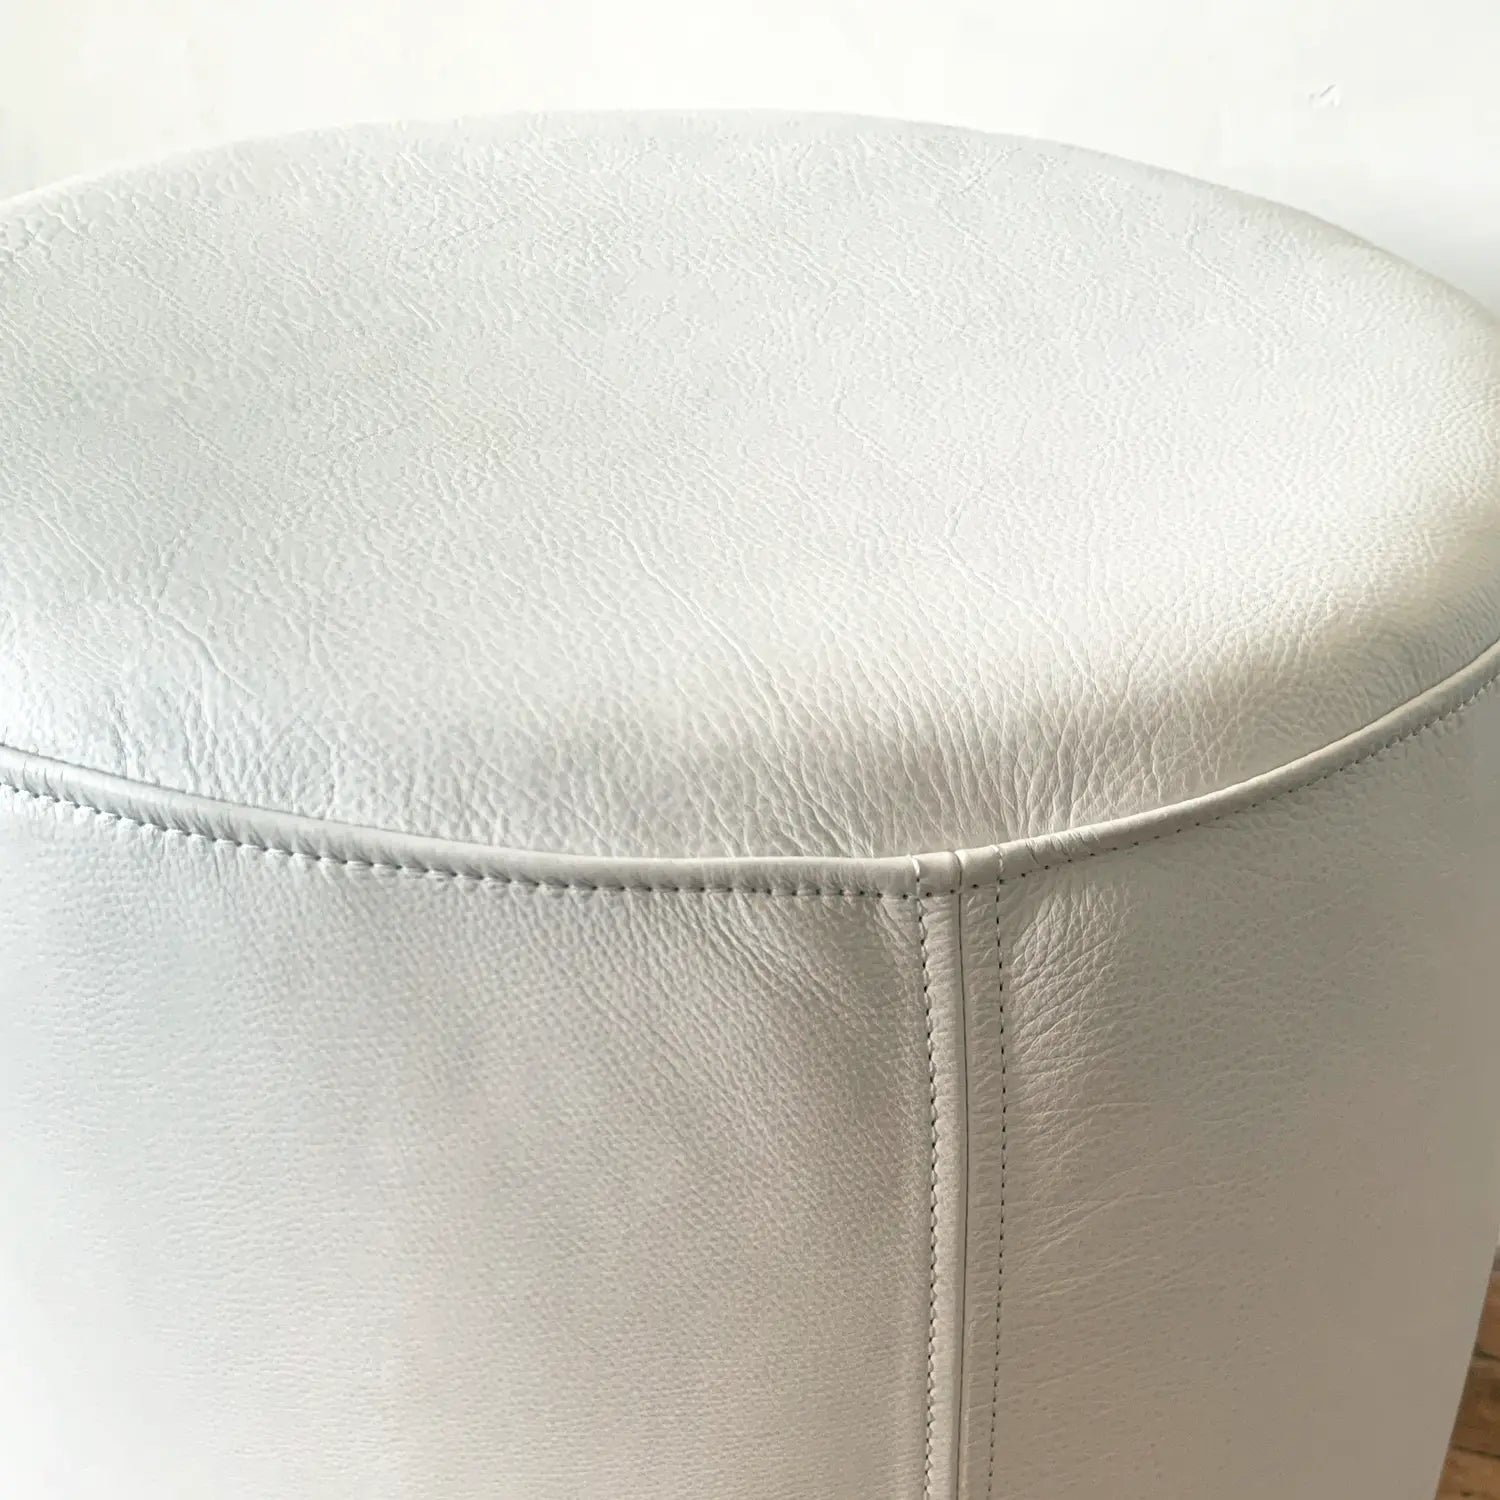 Round Leather Ottoman Pouf | White H U N T E D F O X